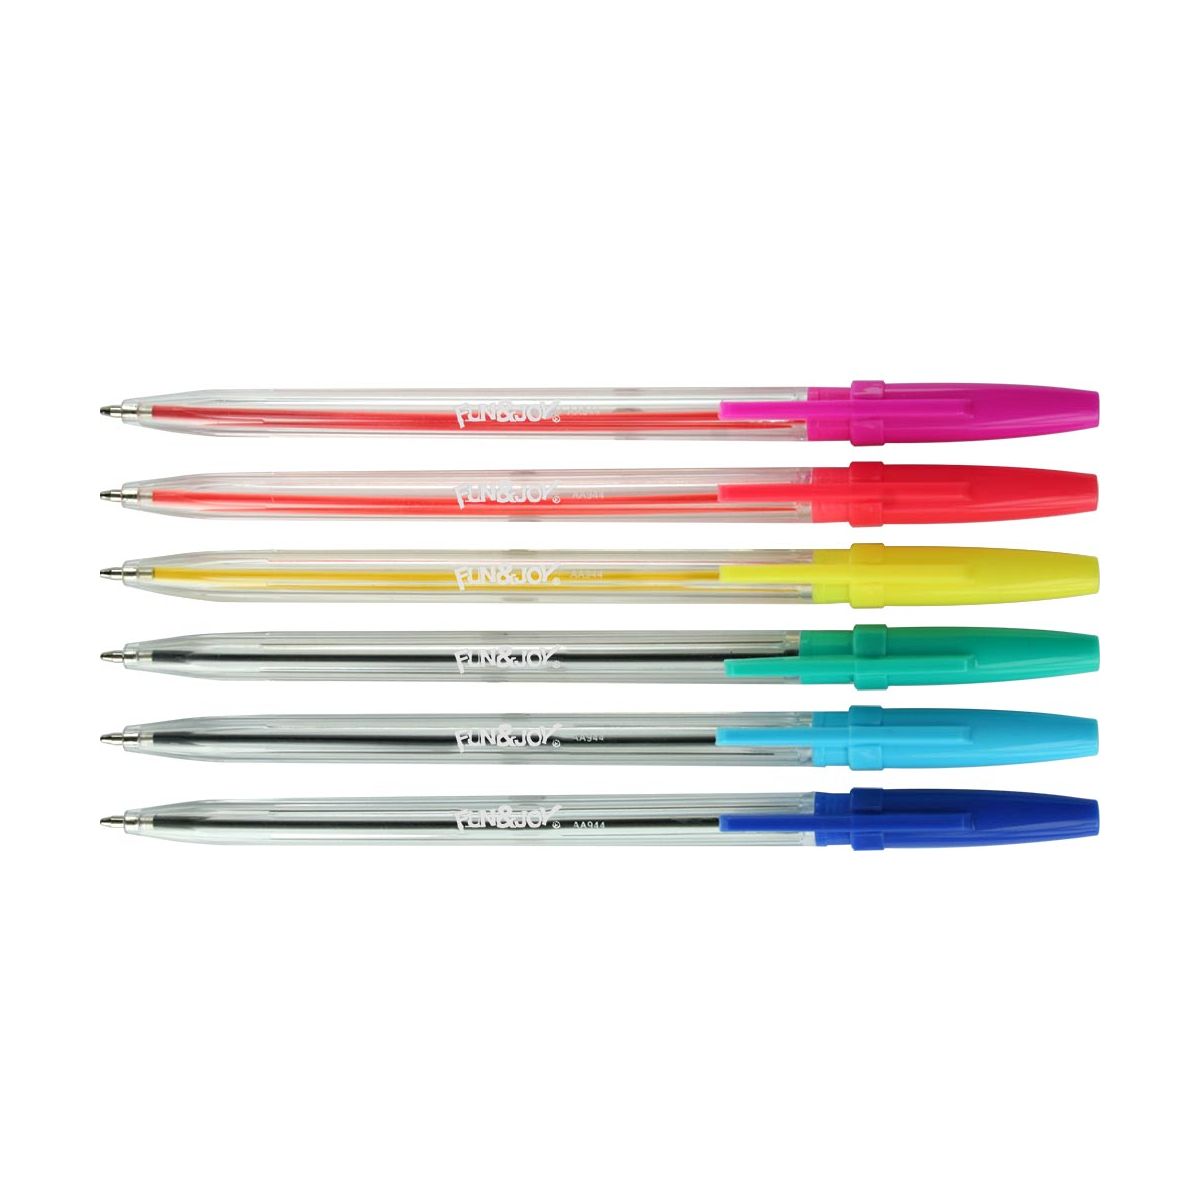 Komplet długopisów Titanum fluo 6 kolorów